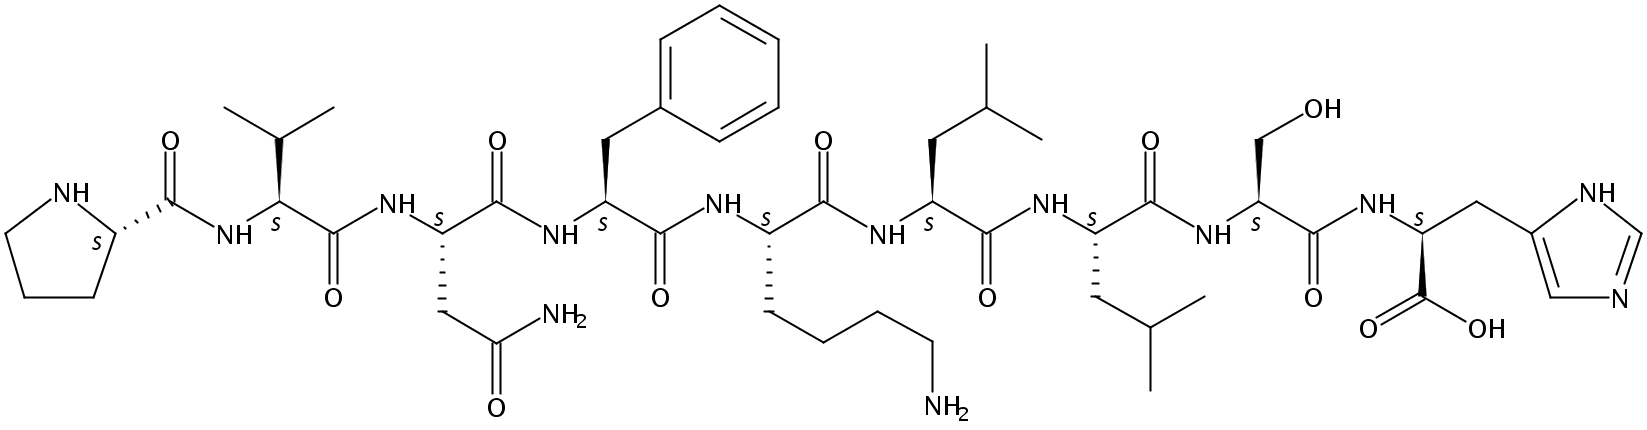 Hemopressin (human, mouse)